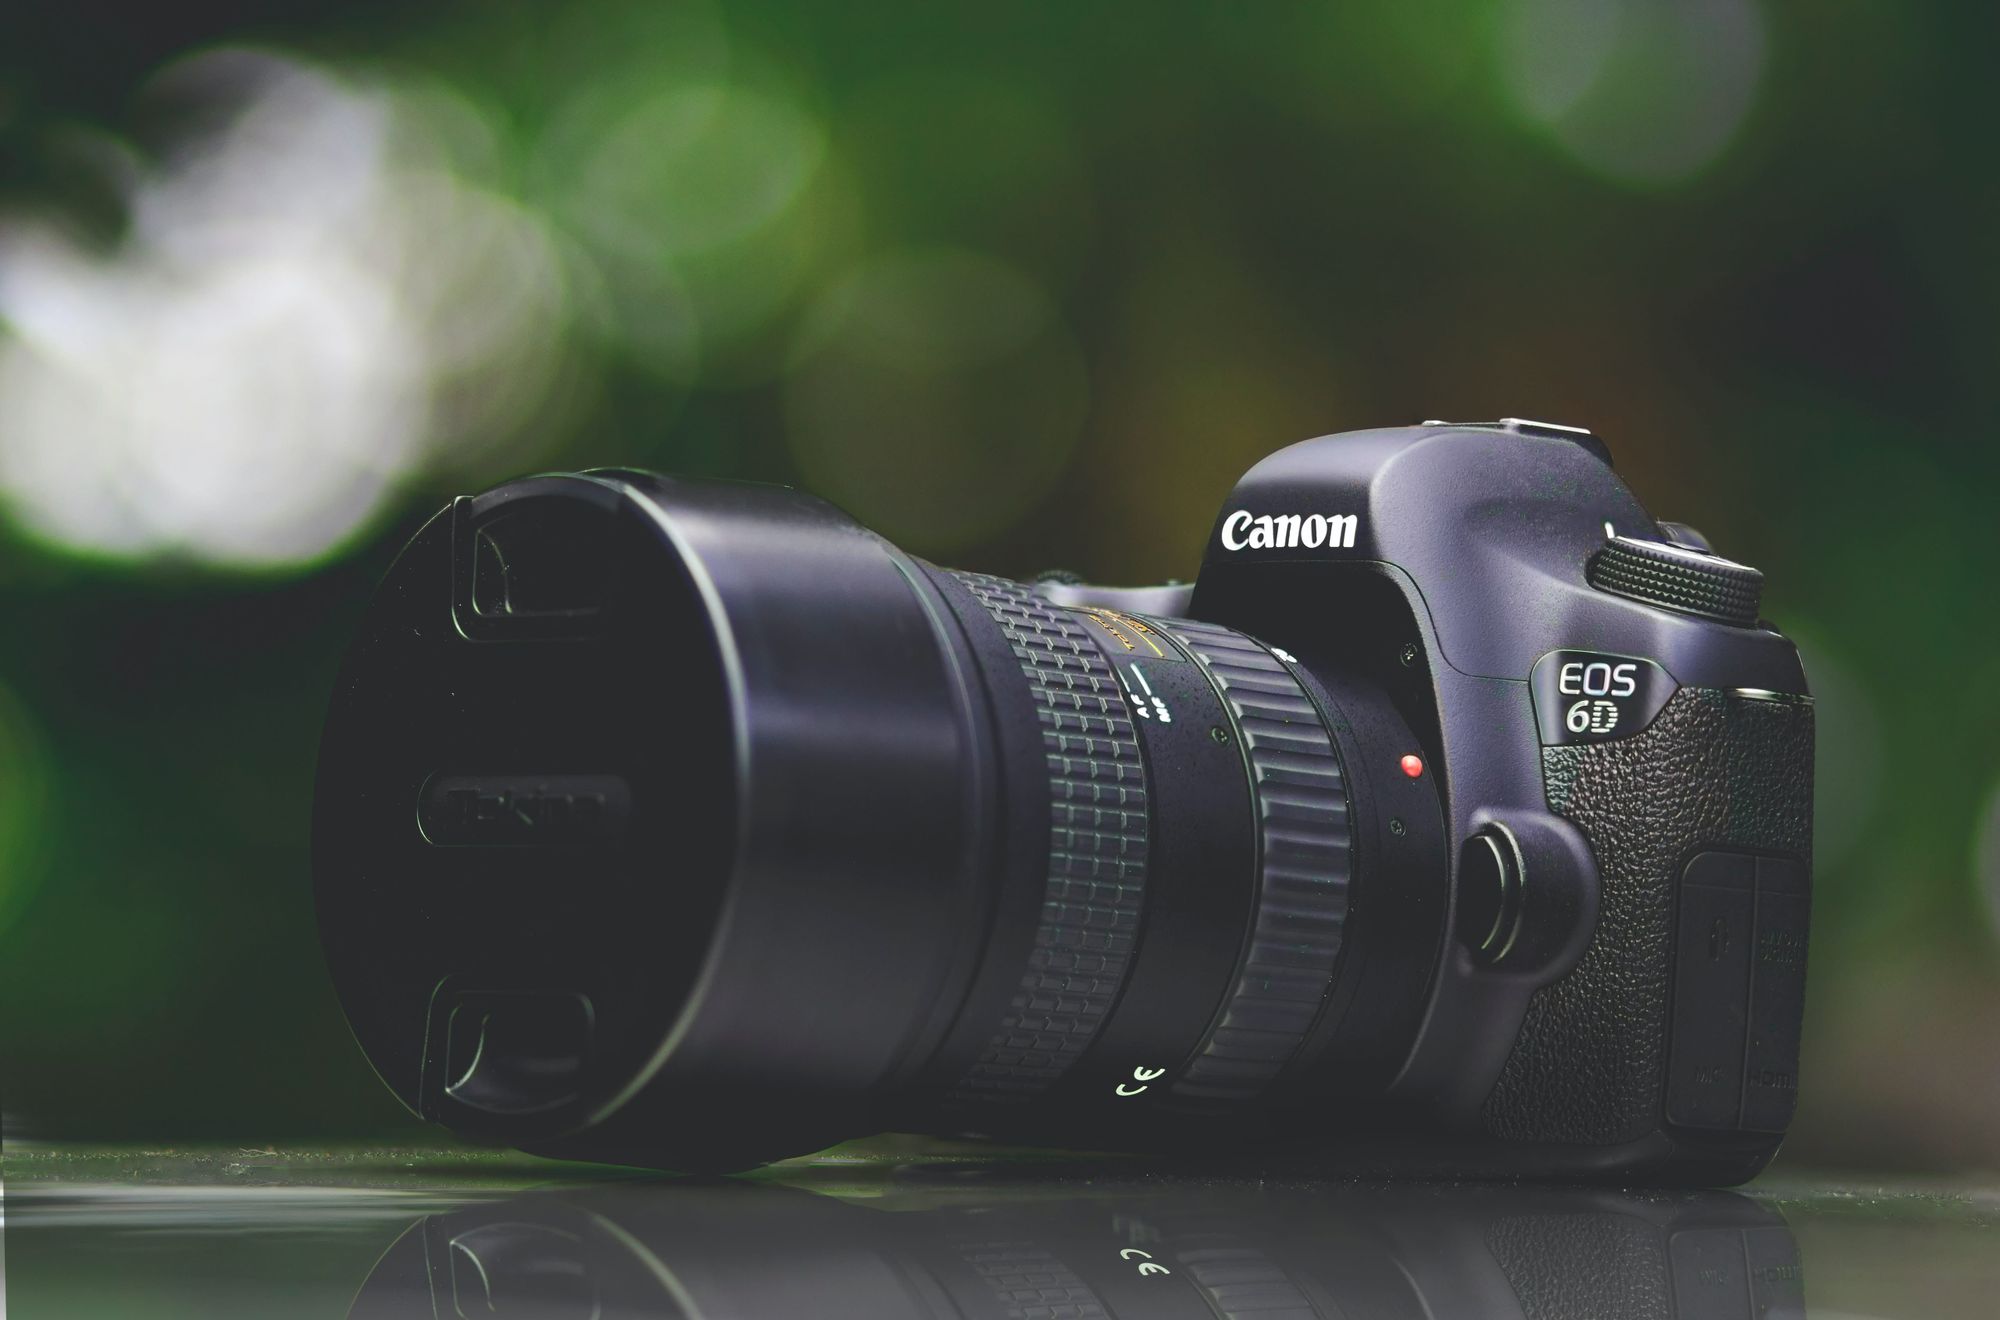 The Canon EOS 6D Mark II